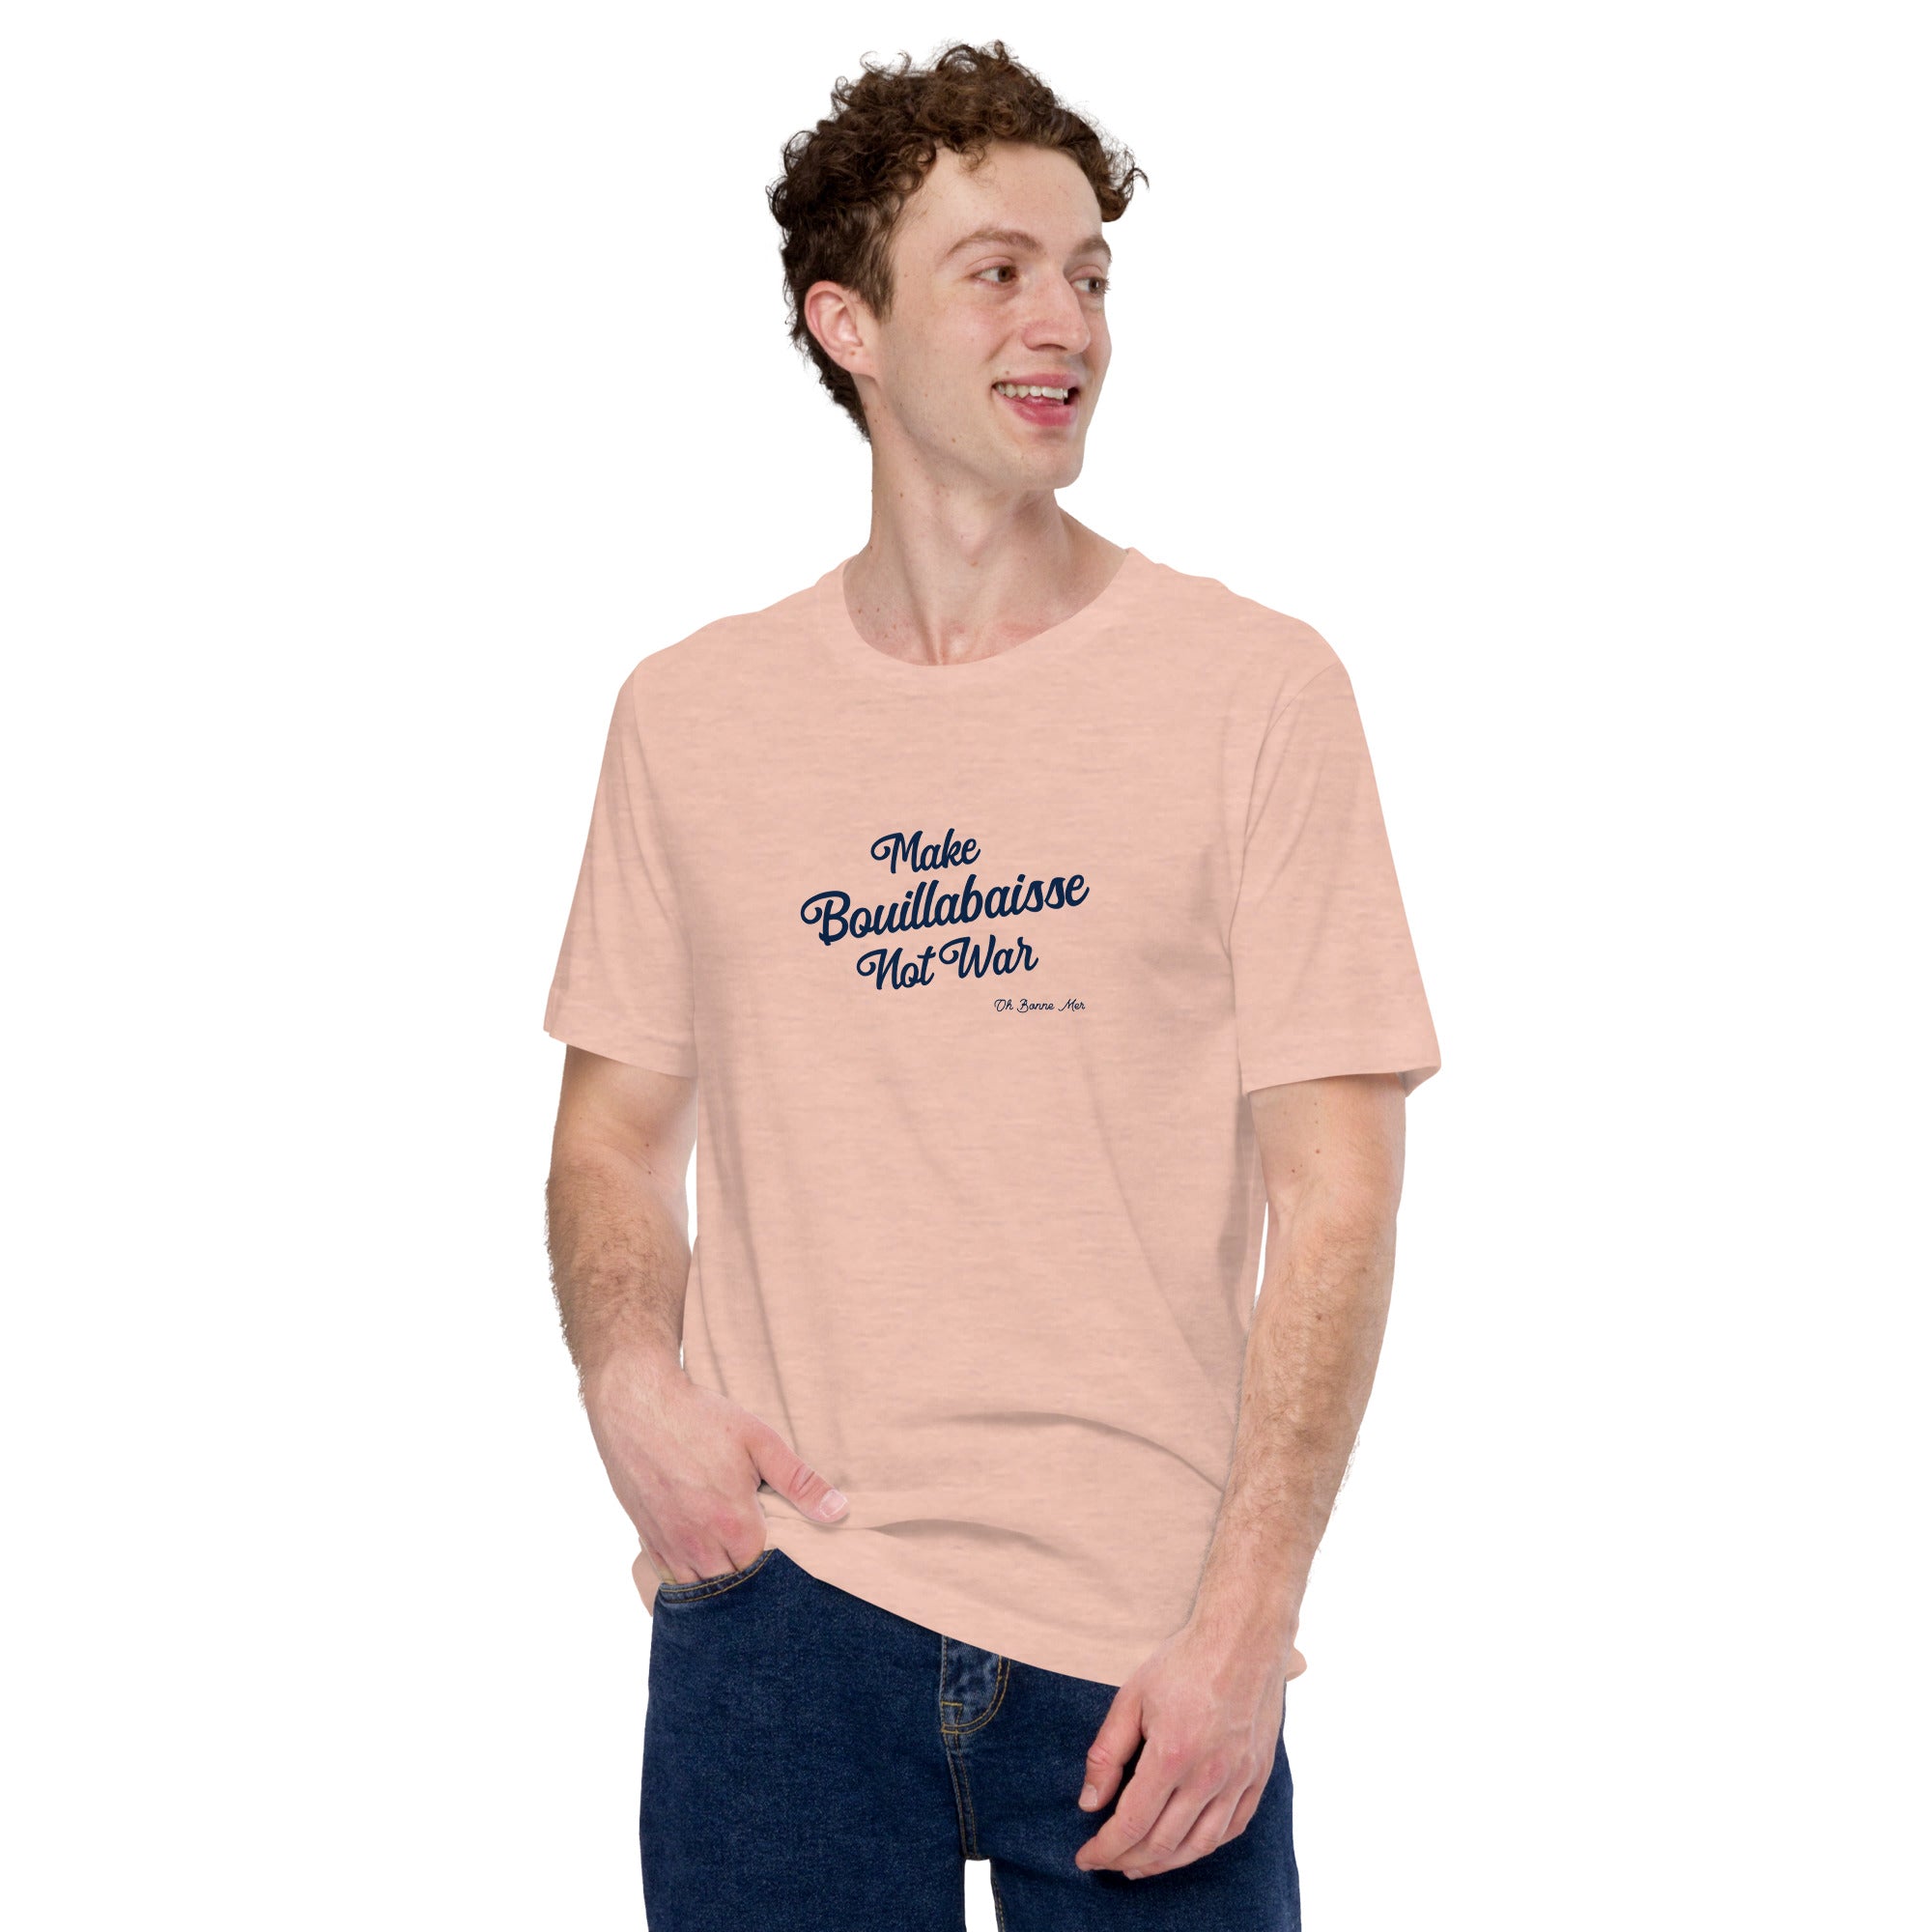 T-shirt en coton unisexe Make Bouillabaisse Not War Text Only sur couleurs chinées claires